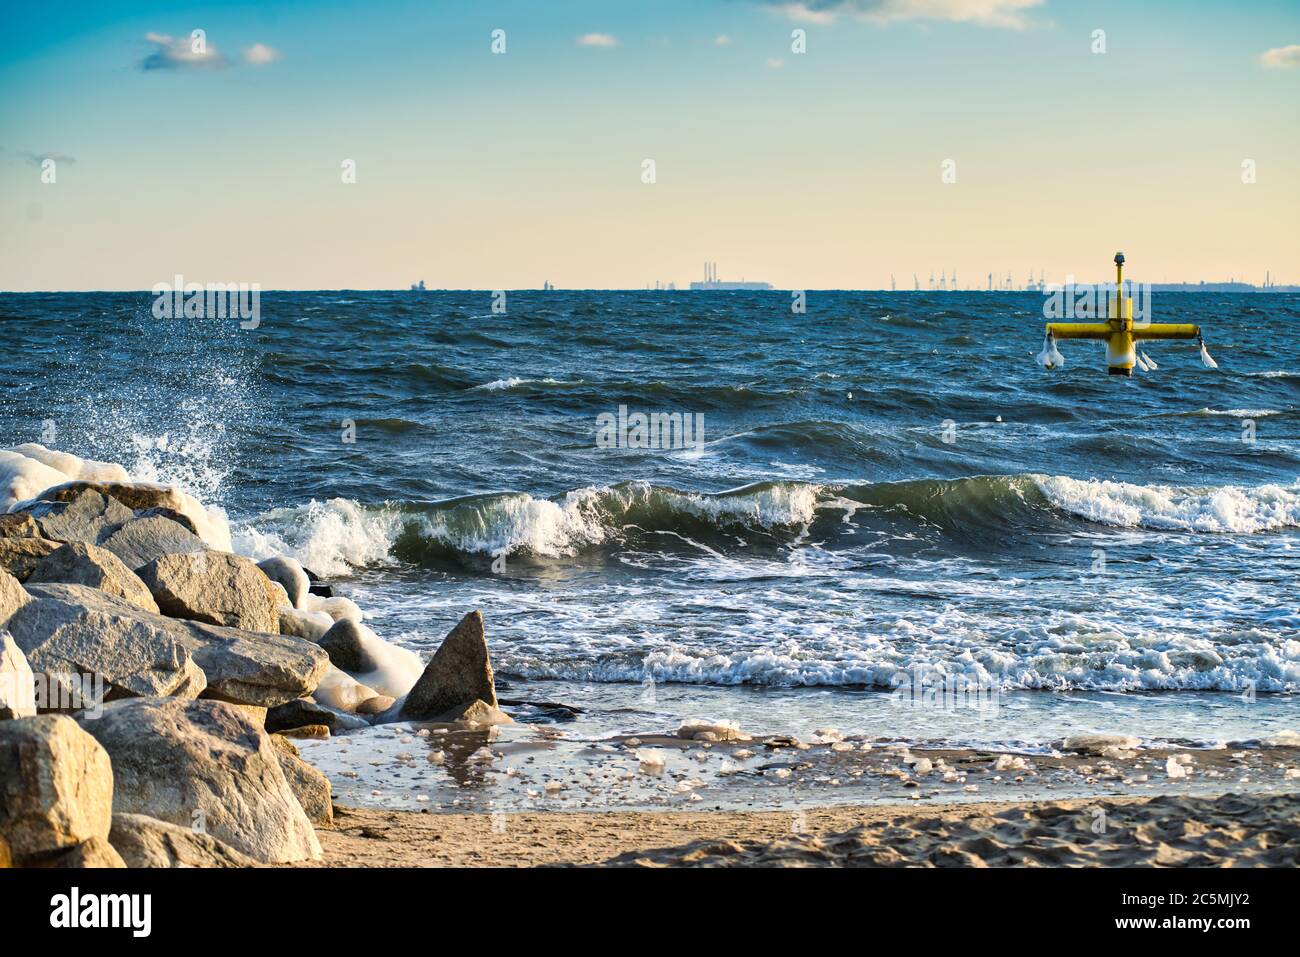 Winter landscape in beach. baltic nordic sea Stock Photo